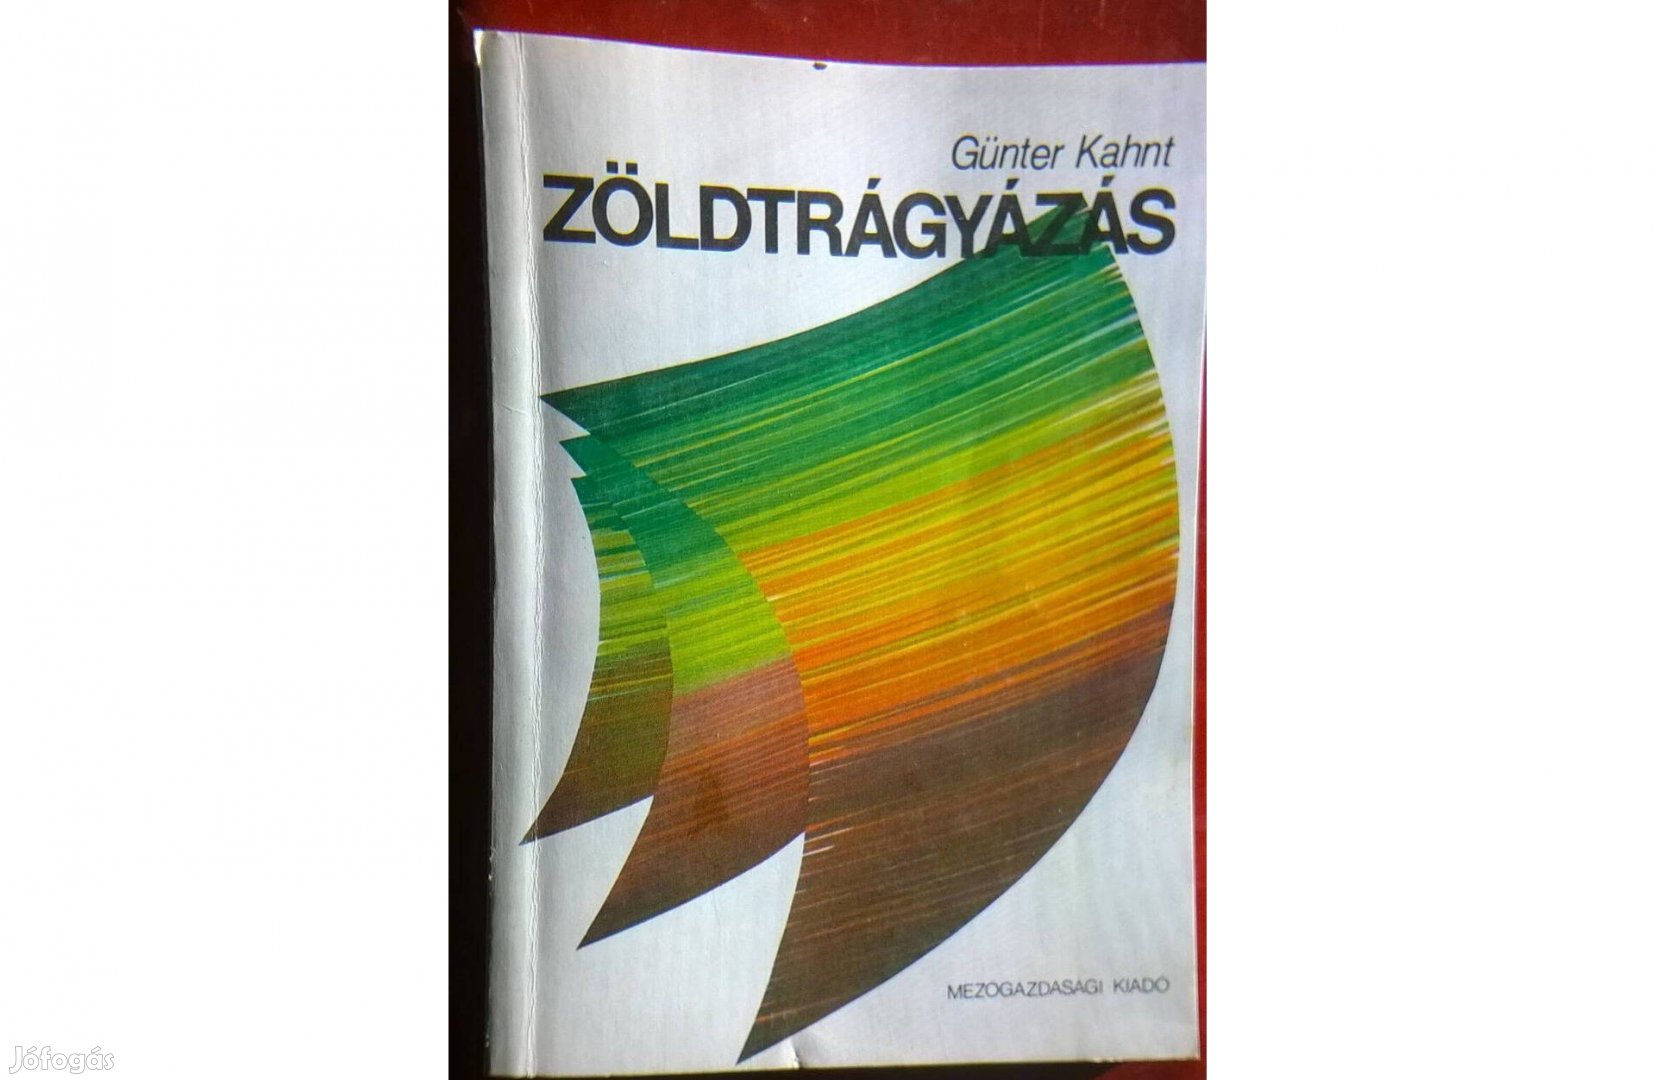 Zöldtrágyázás - Günter Kahnt könyve , Mg.-i kiadó , 1986